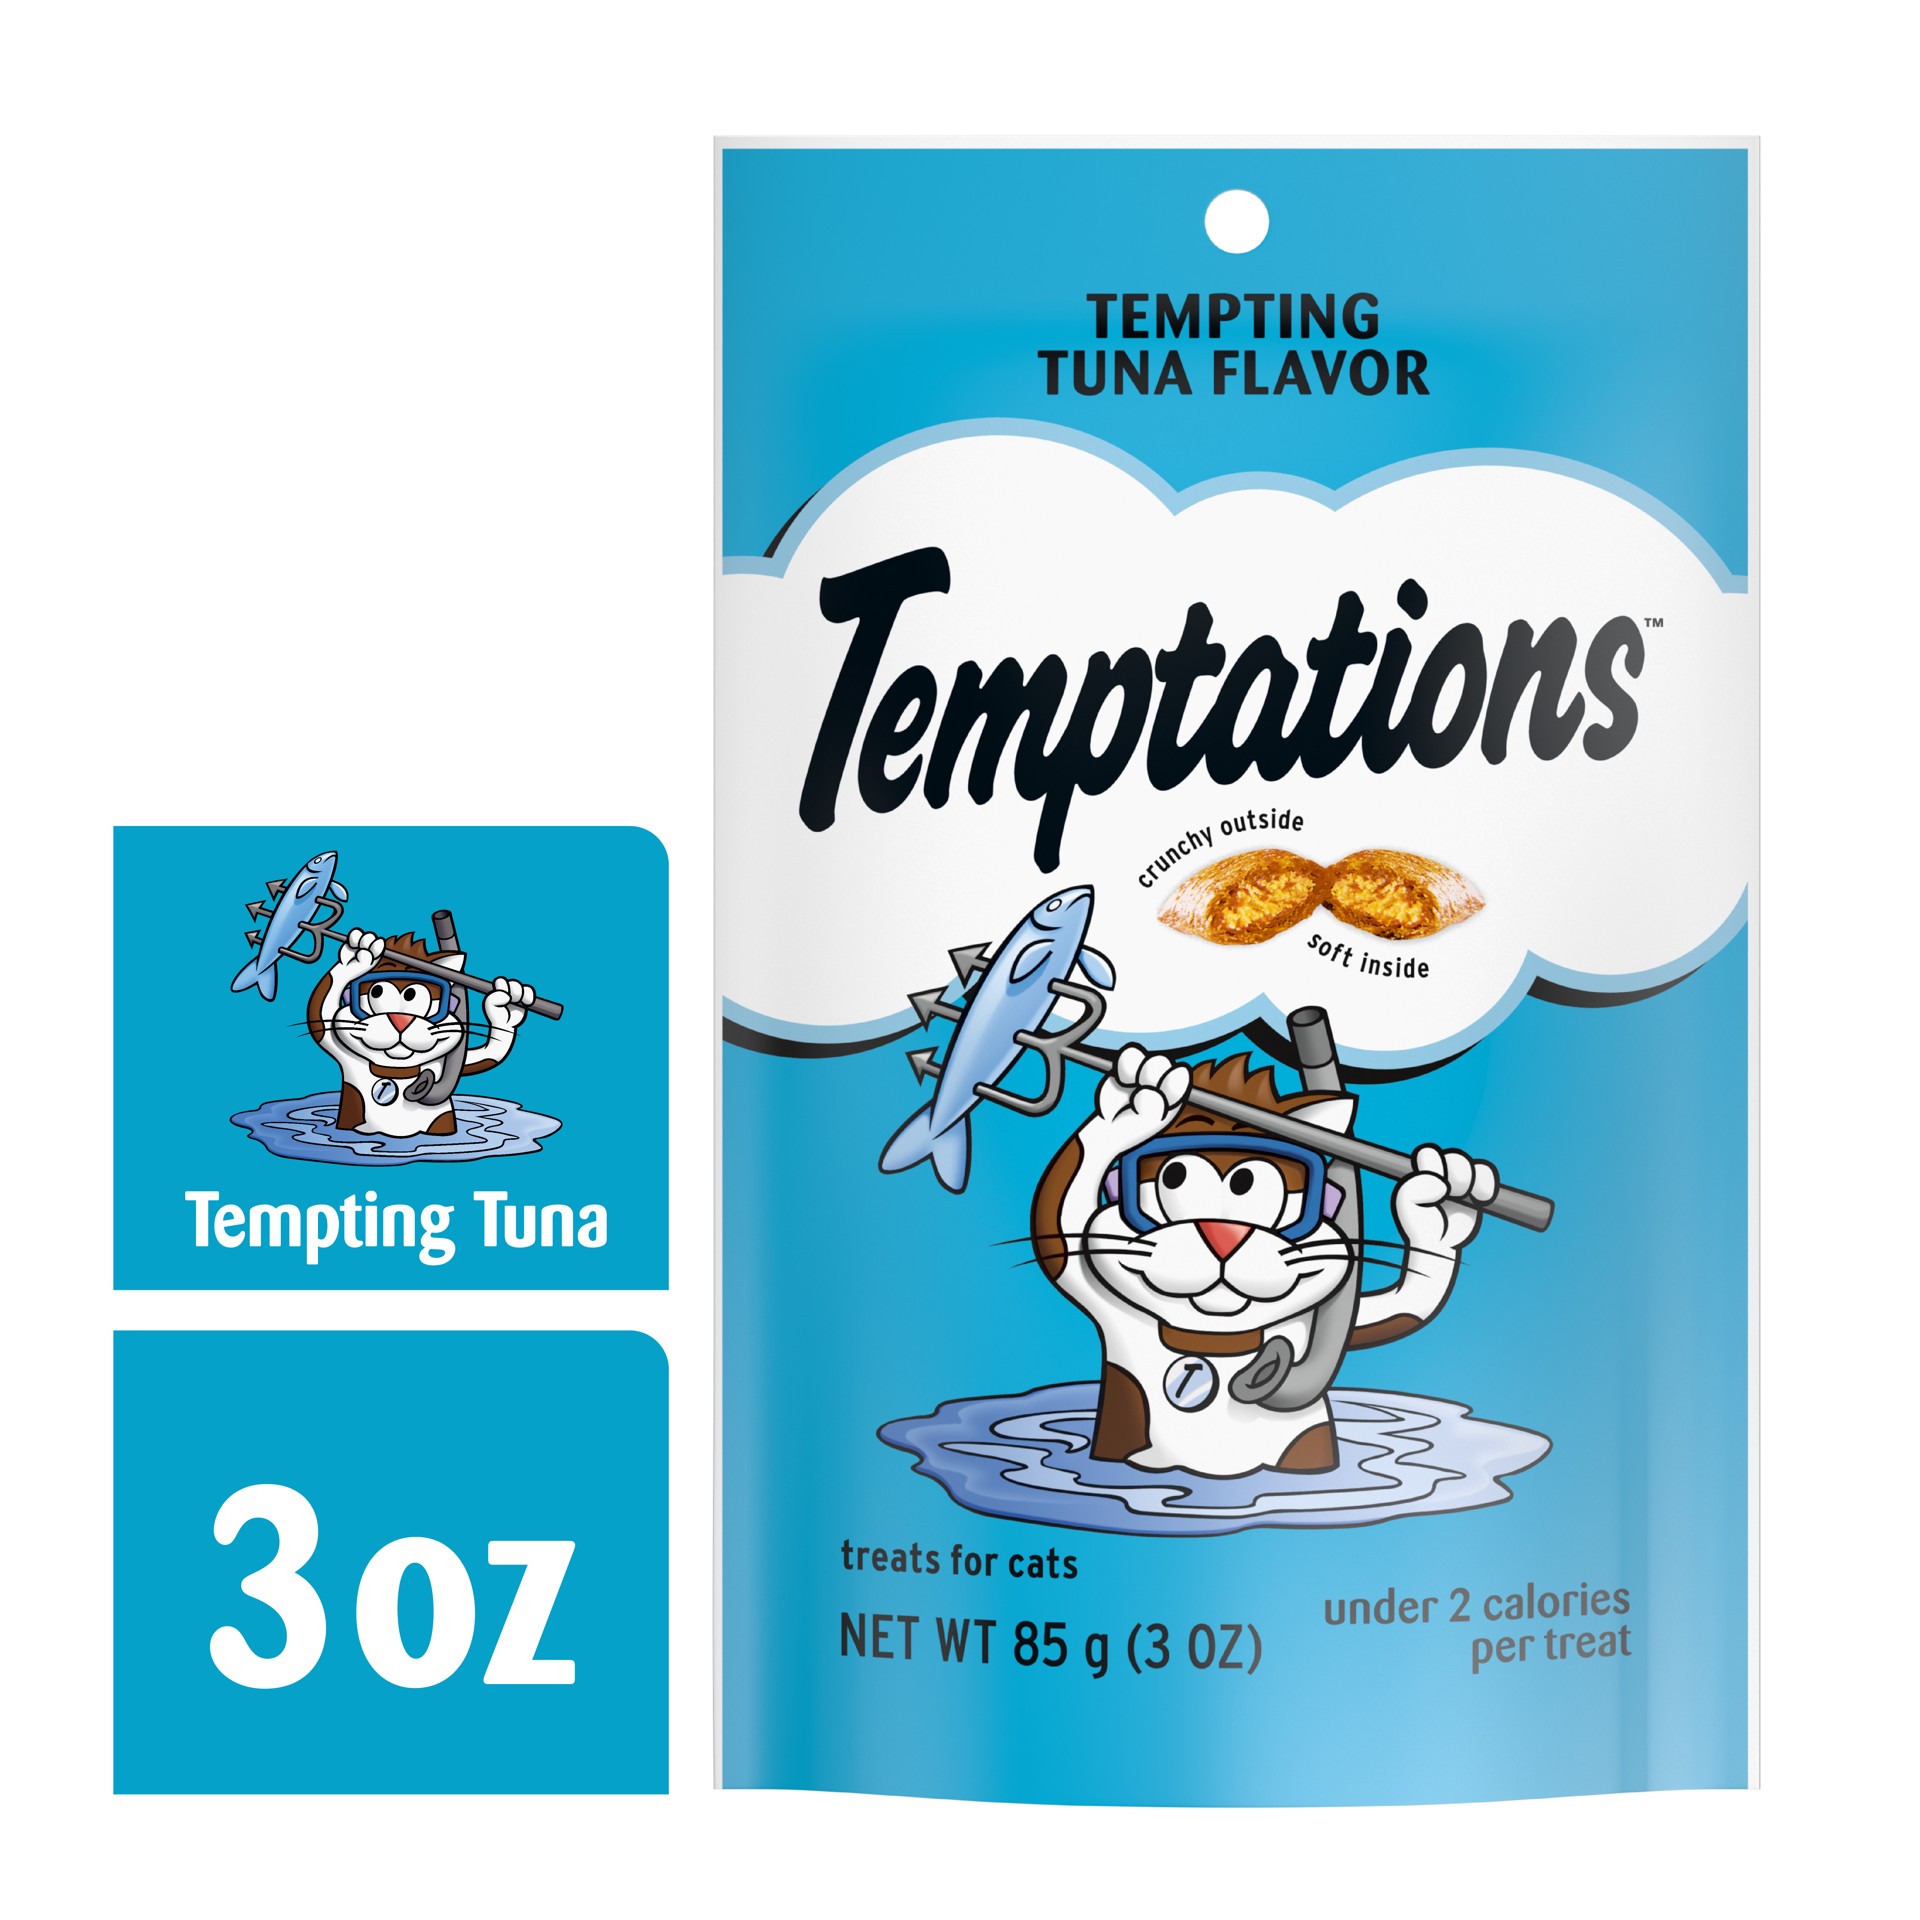 slide 1 of 3, Temptations Tempting Tuna Flavor Crunchy Cat Treats - 3oz, 3 oz